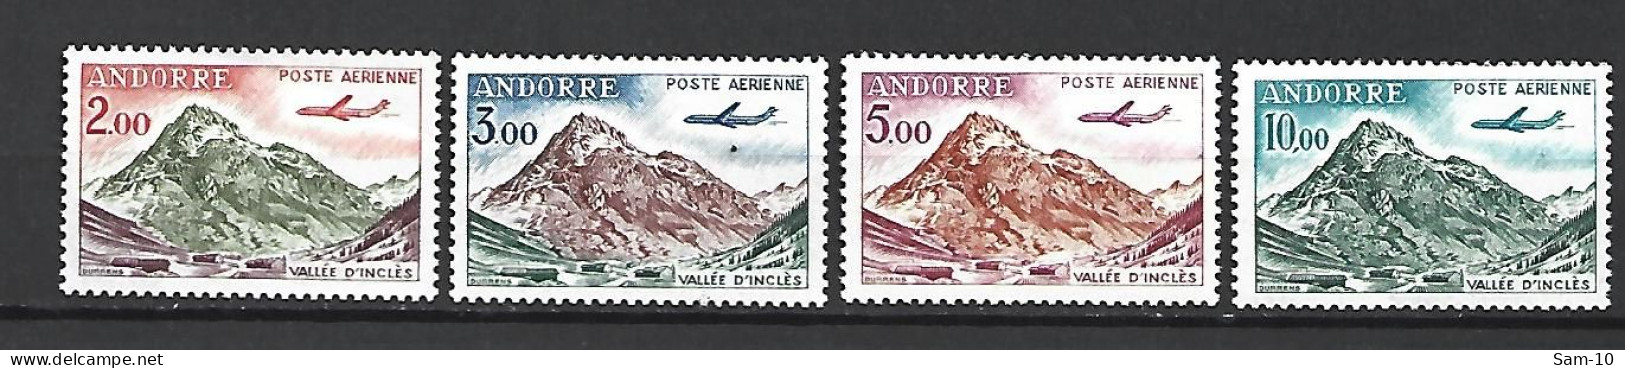 Timbre Andorre Français Neuf **  P-a  N 5 / 8 - Airmail